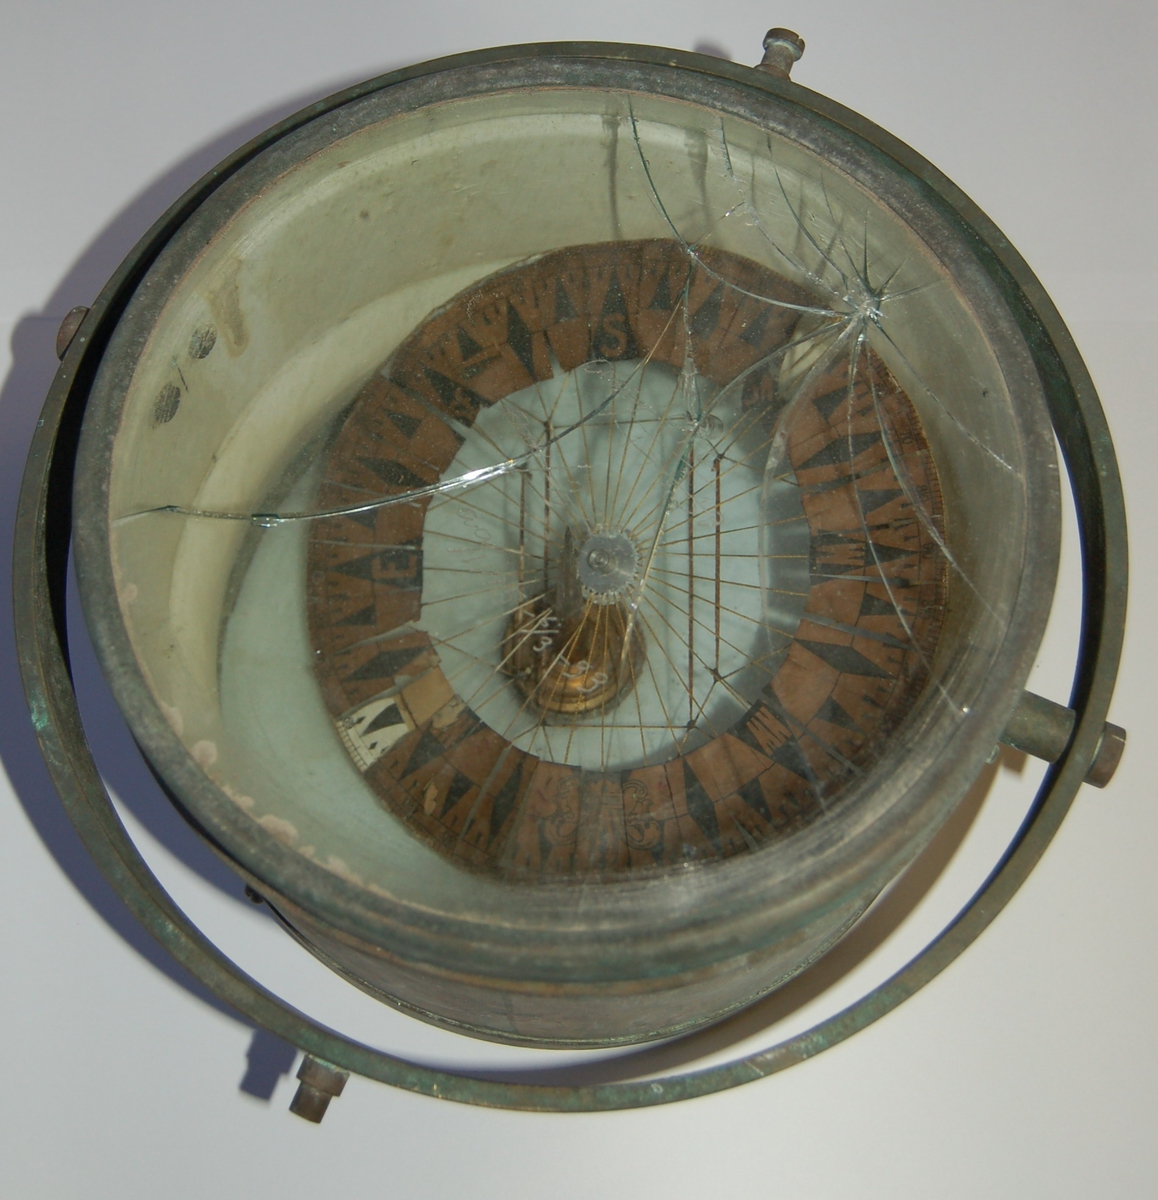 Gjenstanden er eit "Luftkompass" av eldre type. I glasset på kompasset er det ripet inn dateringer for når kompasset er korrigert. "aa/912. 17-2-30" (17.02.1933). "aa/233". "aa/1195. 6/3-33" (06.03.1933).